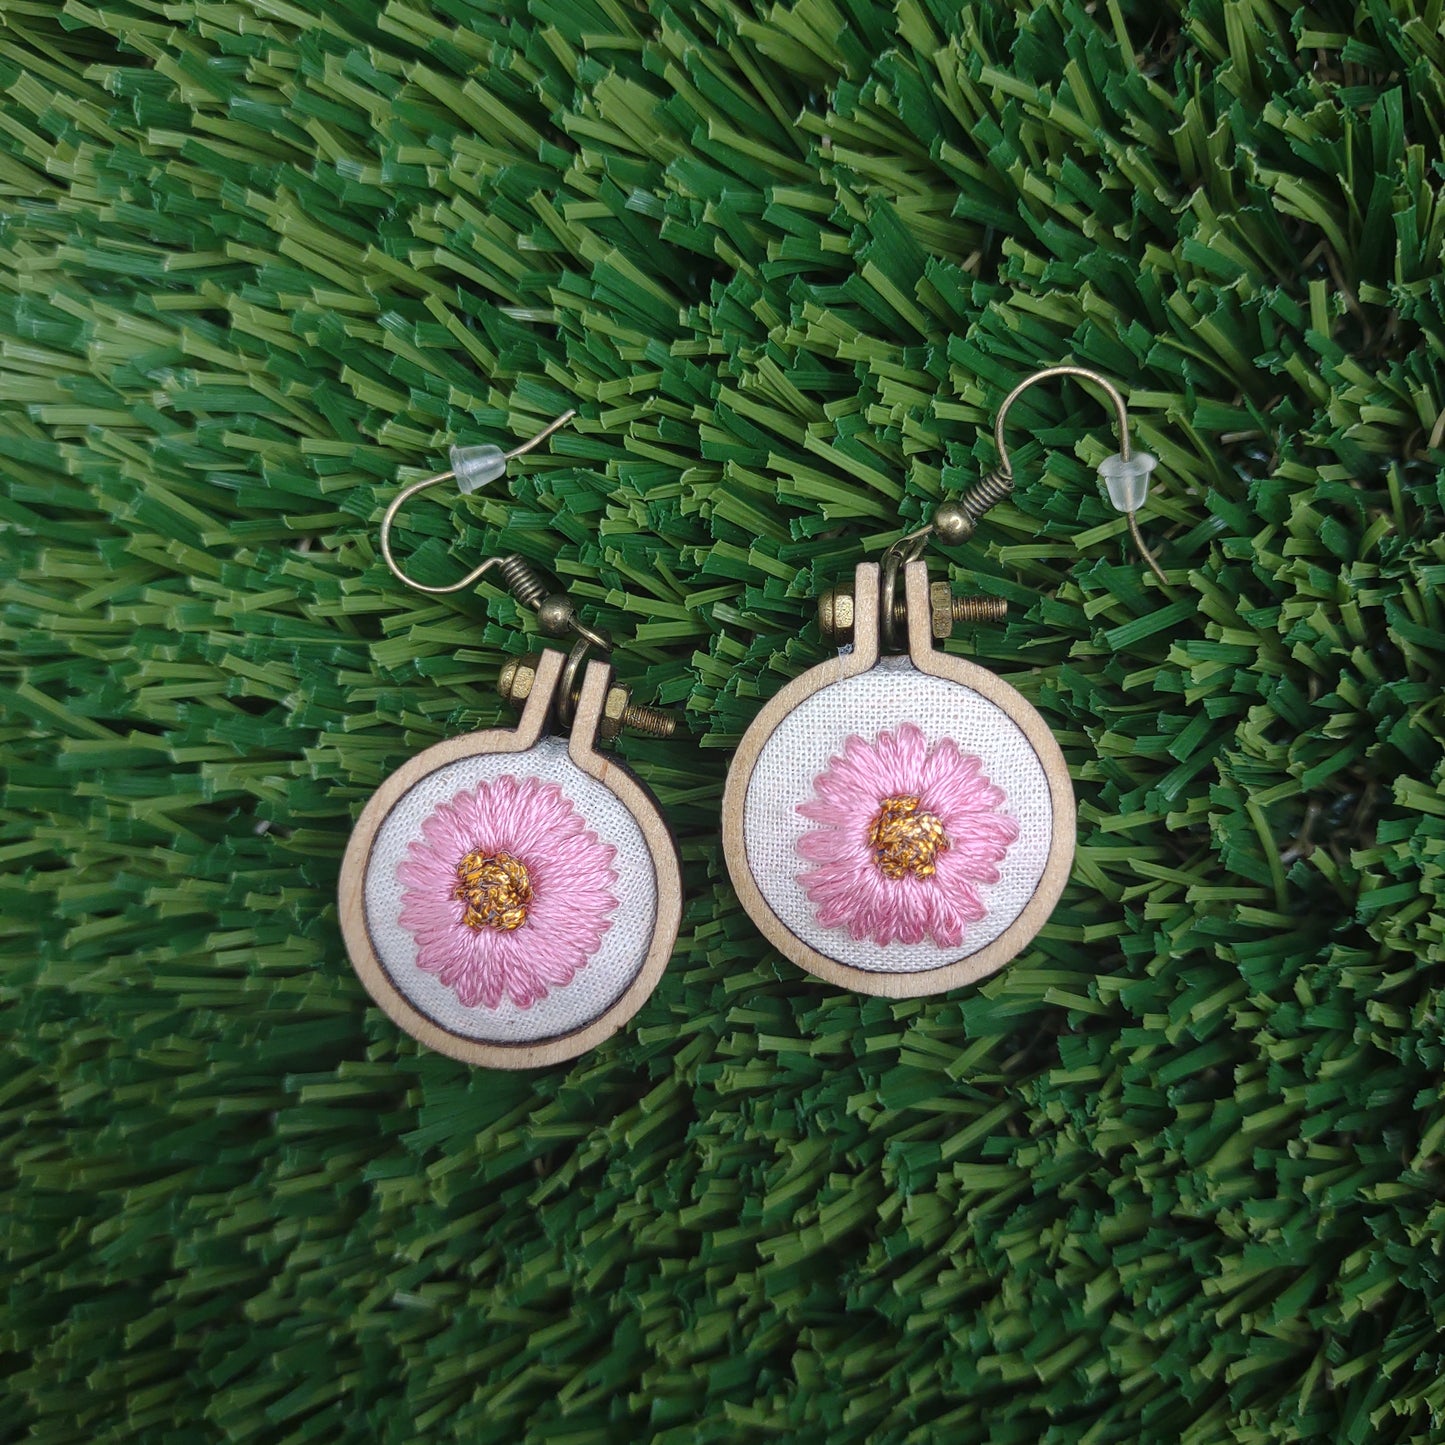 Handmade Embroidered Flower Earrings